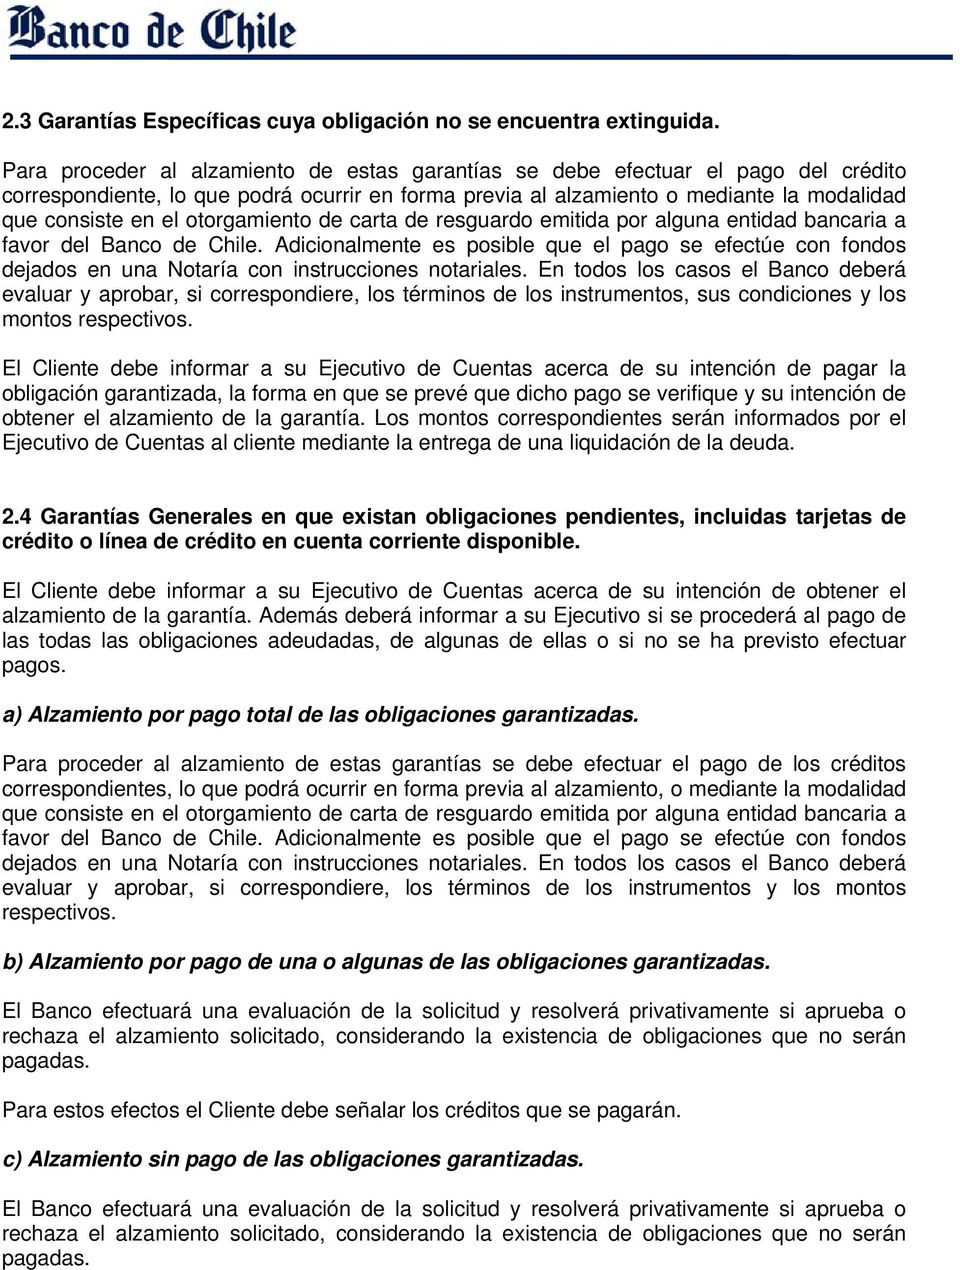 otorgamiento de carta de resguardo emitida por alguna entidad bancaria a favor del Banco de Chile.